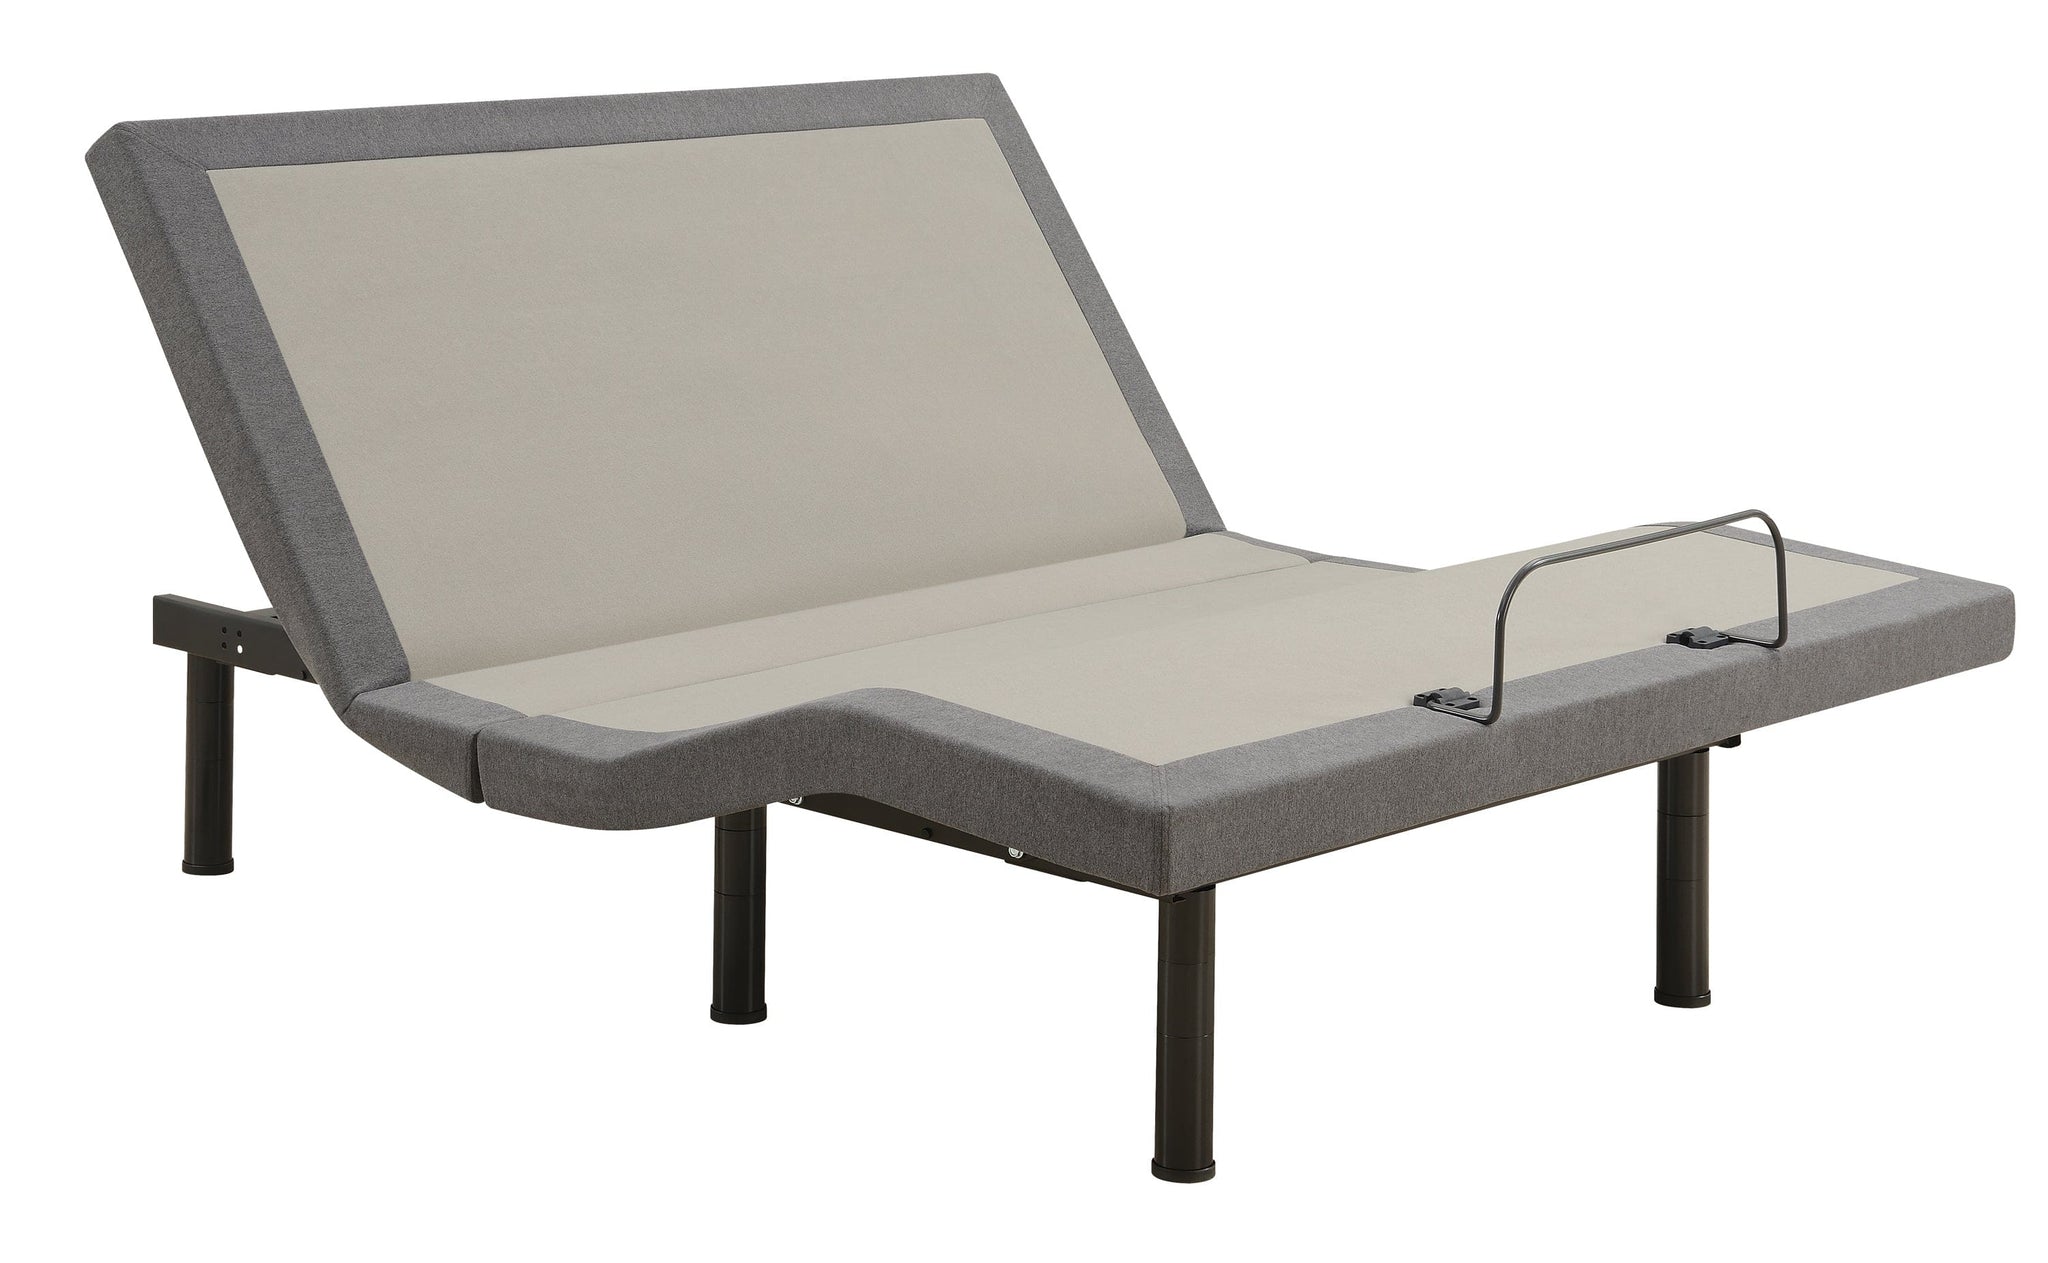 Negan Eastern King Adjustable Bed Base Grey And Black - 350132KE